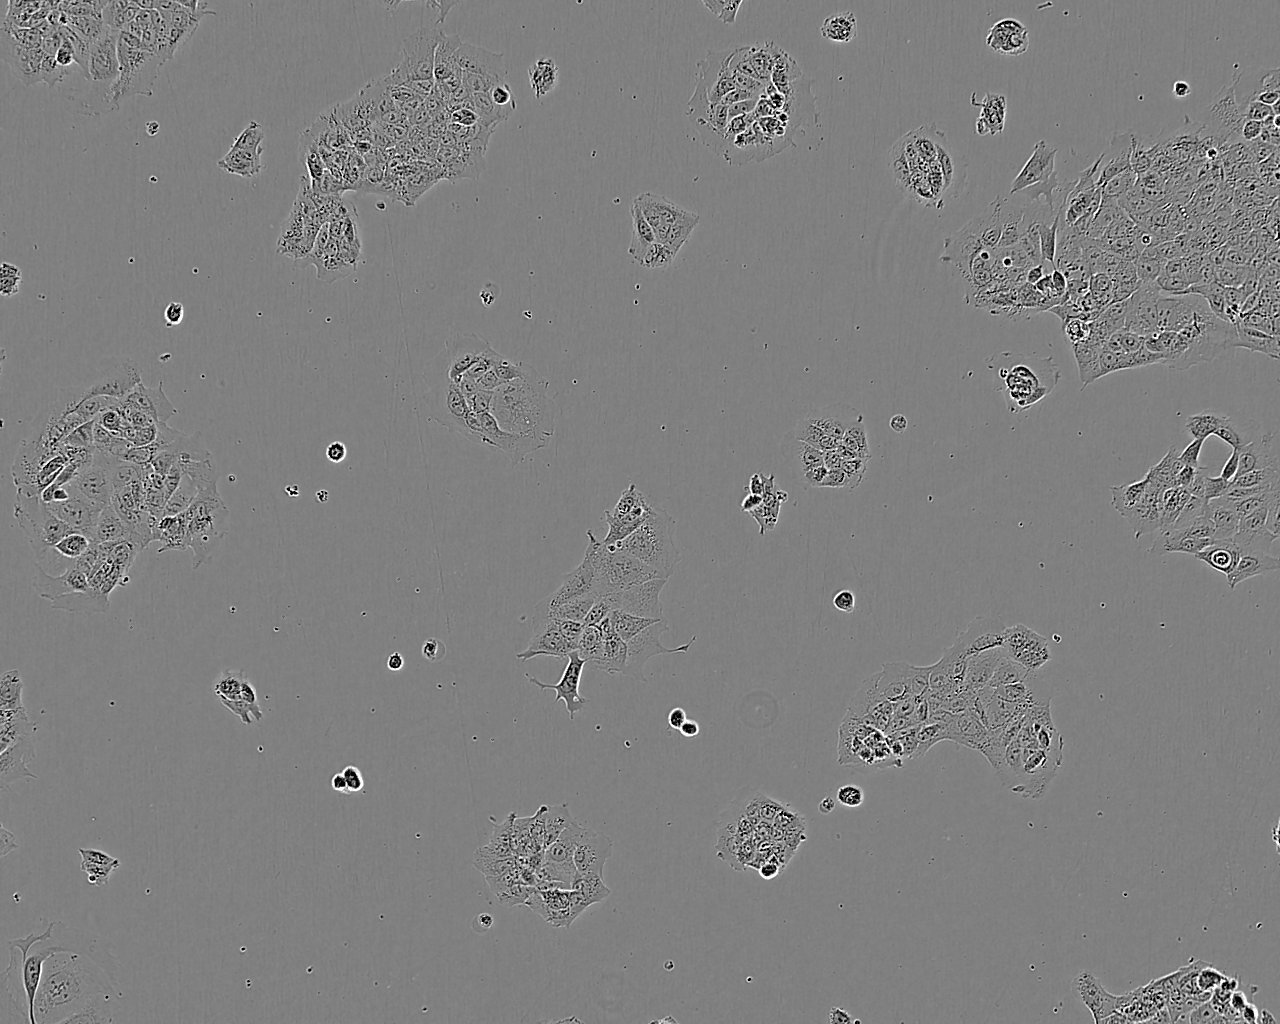 UM-UC-1 cell line人膀胱移行癌细胞系,UM-UC-1 cell line